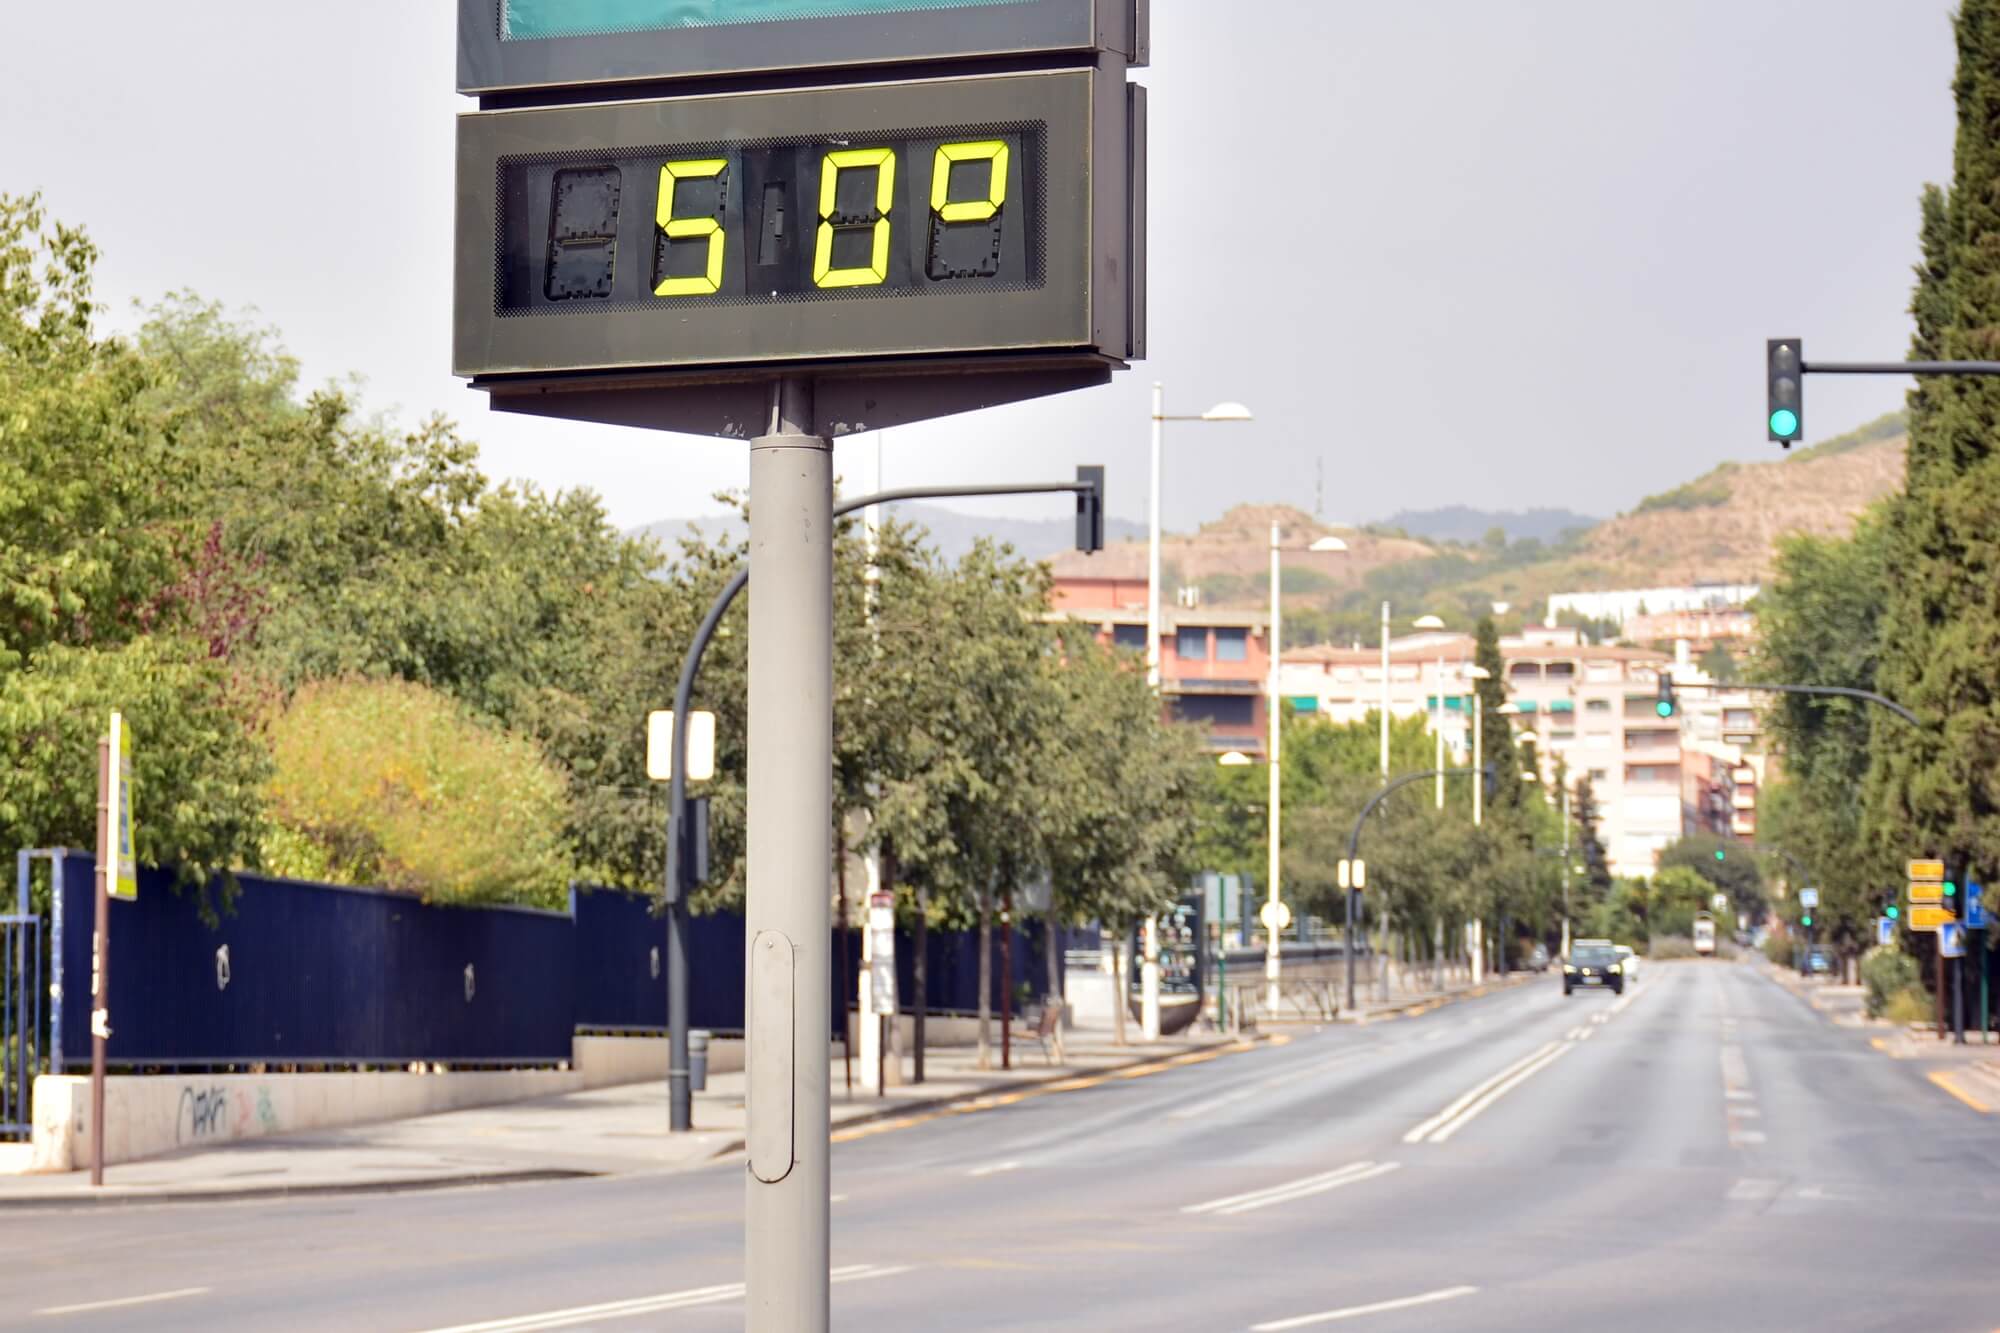 تدابير الحرارة الشديدة في أوروبا. الصورة: موقع إيداع الصور.com